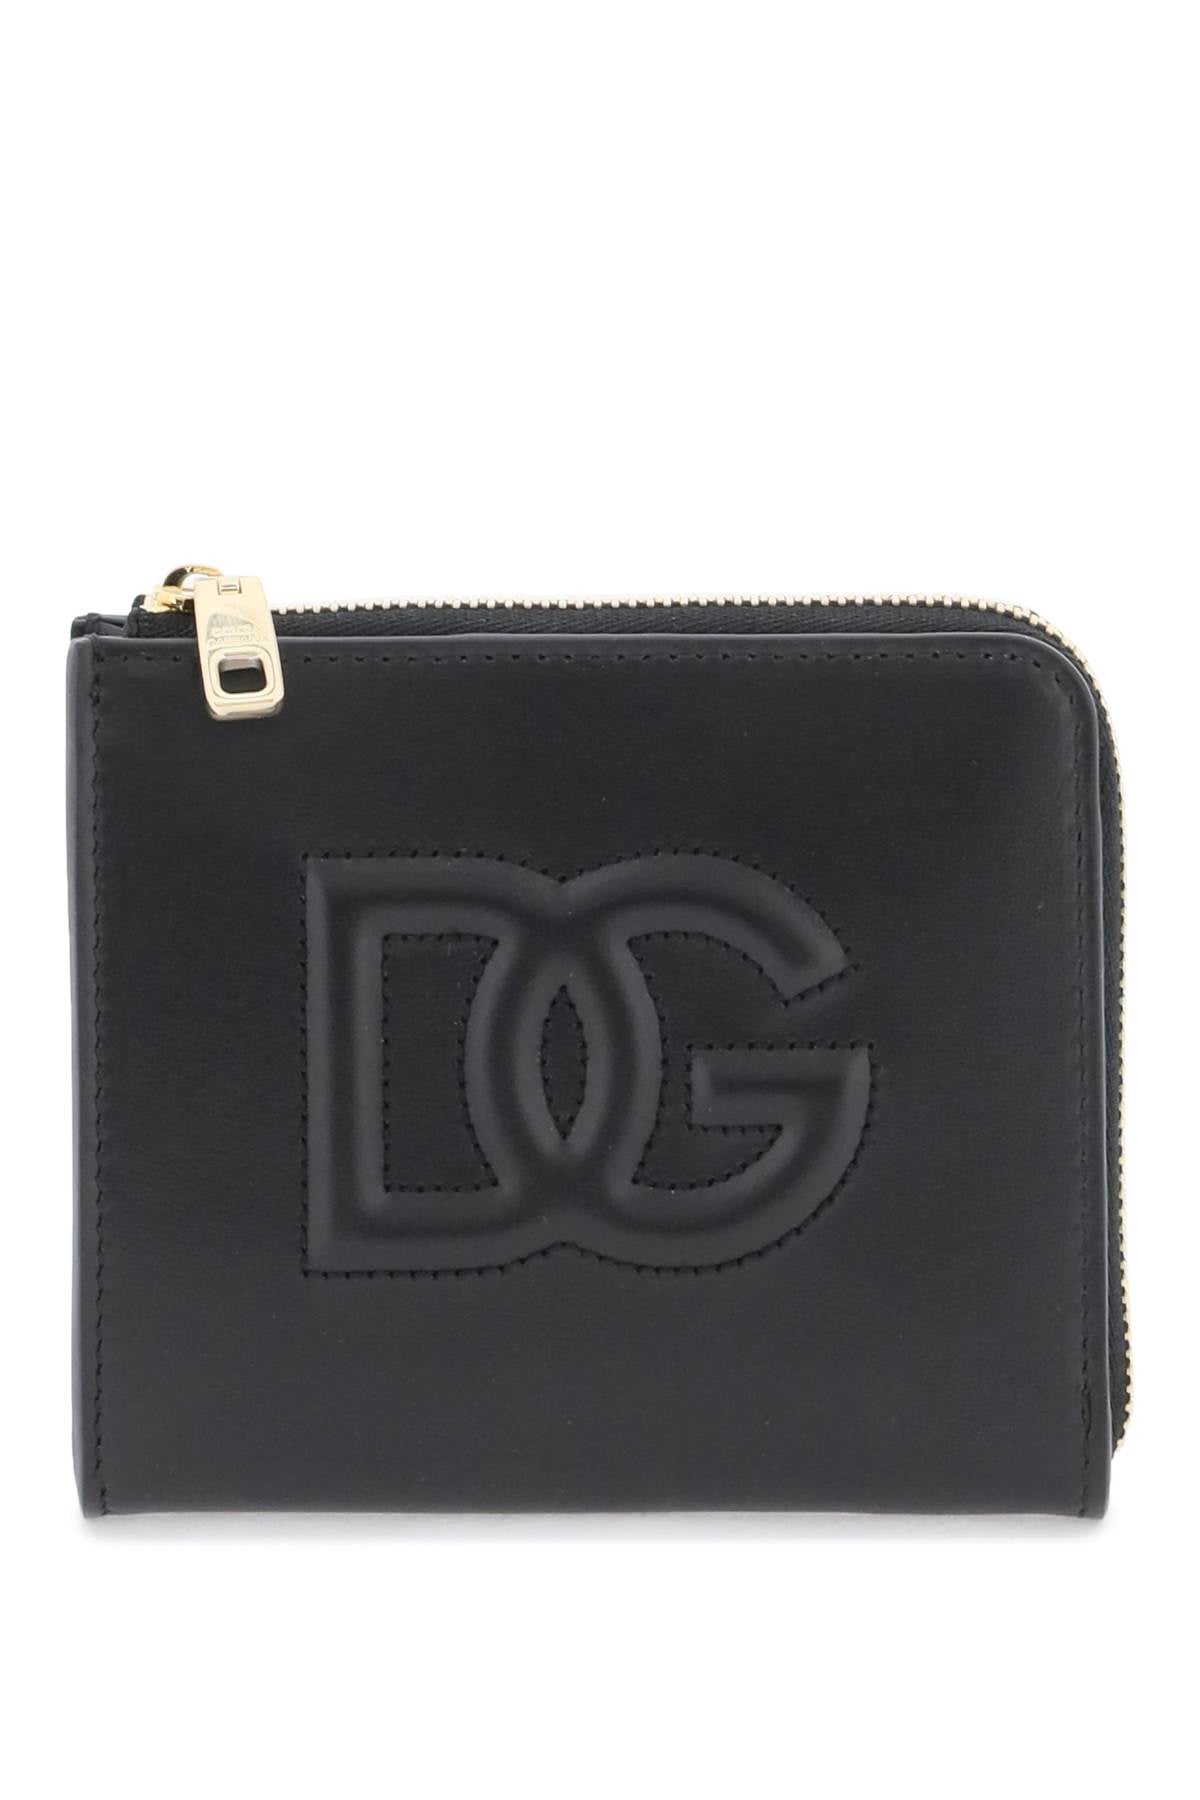 Dolce & Gabbana Dolce & gabbana dg logo wallet